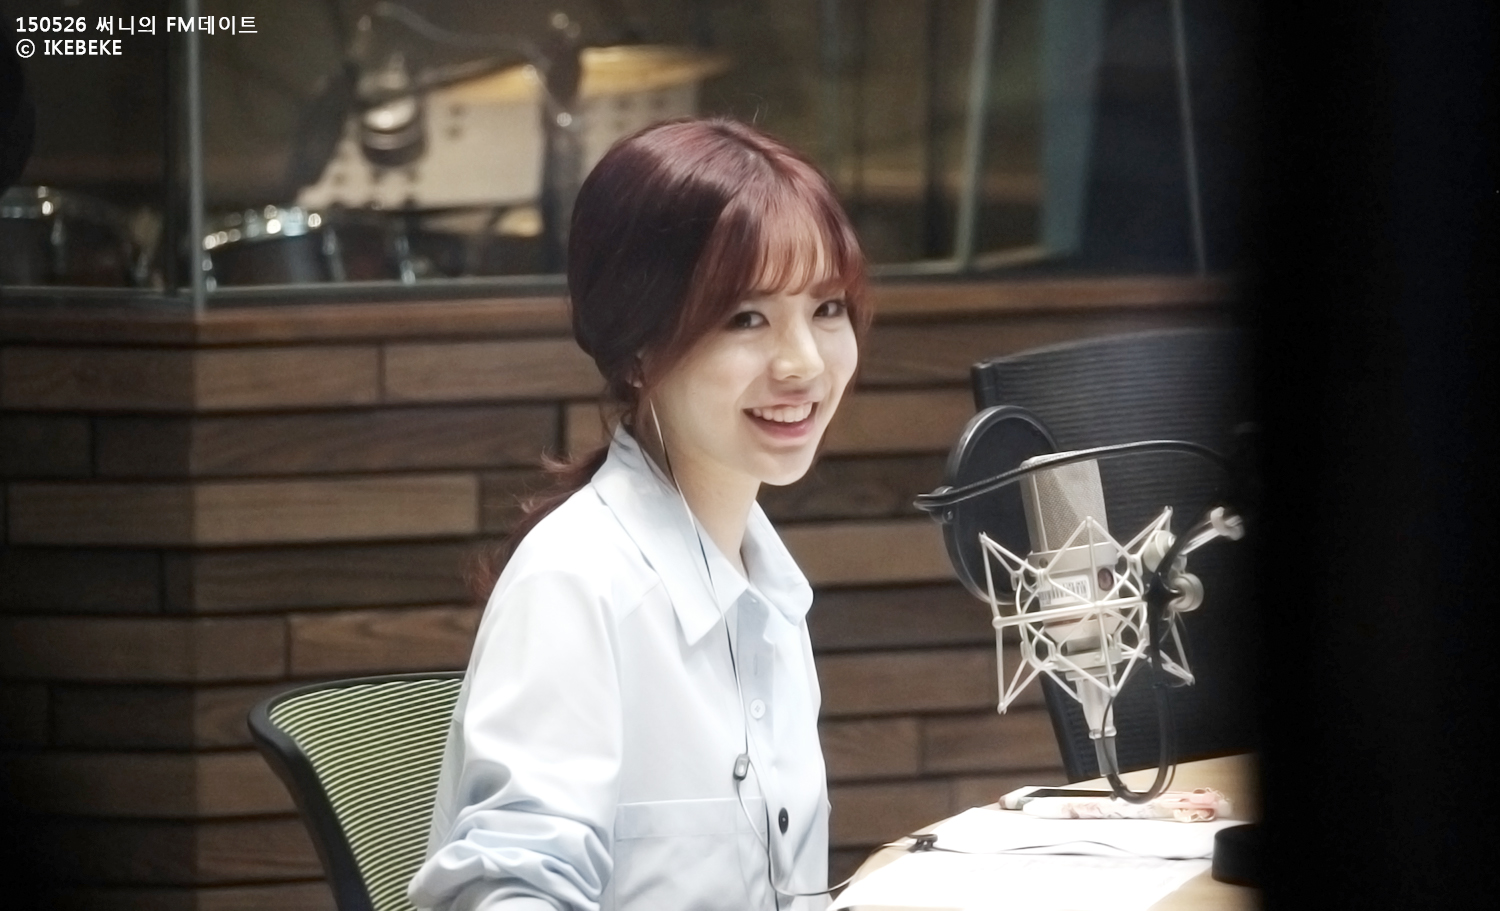 [OTHER][06-02-2015]Hình ảnh mới nhất từ DJ Sunny tại Radio MBC FM4U - "FM Date" - Page 19 2252243C558FE60114F517